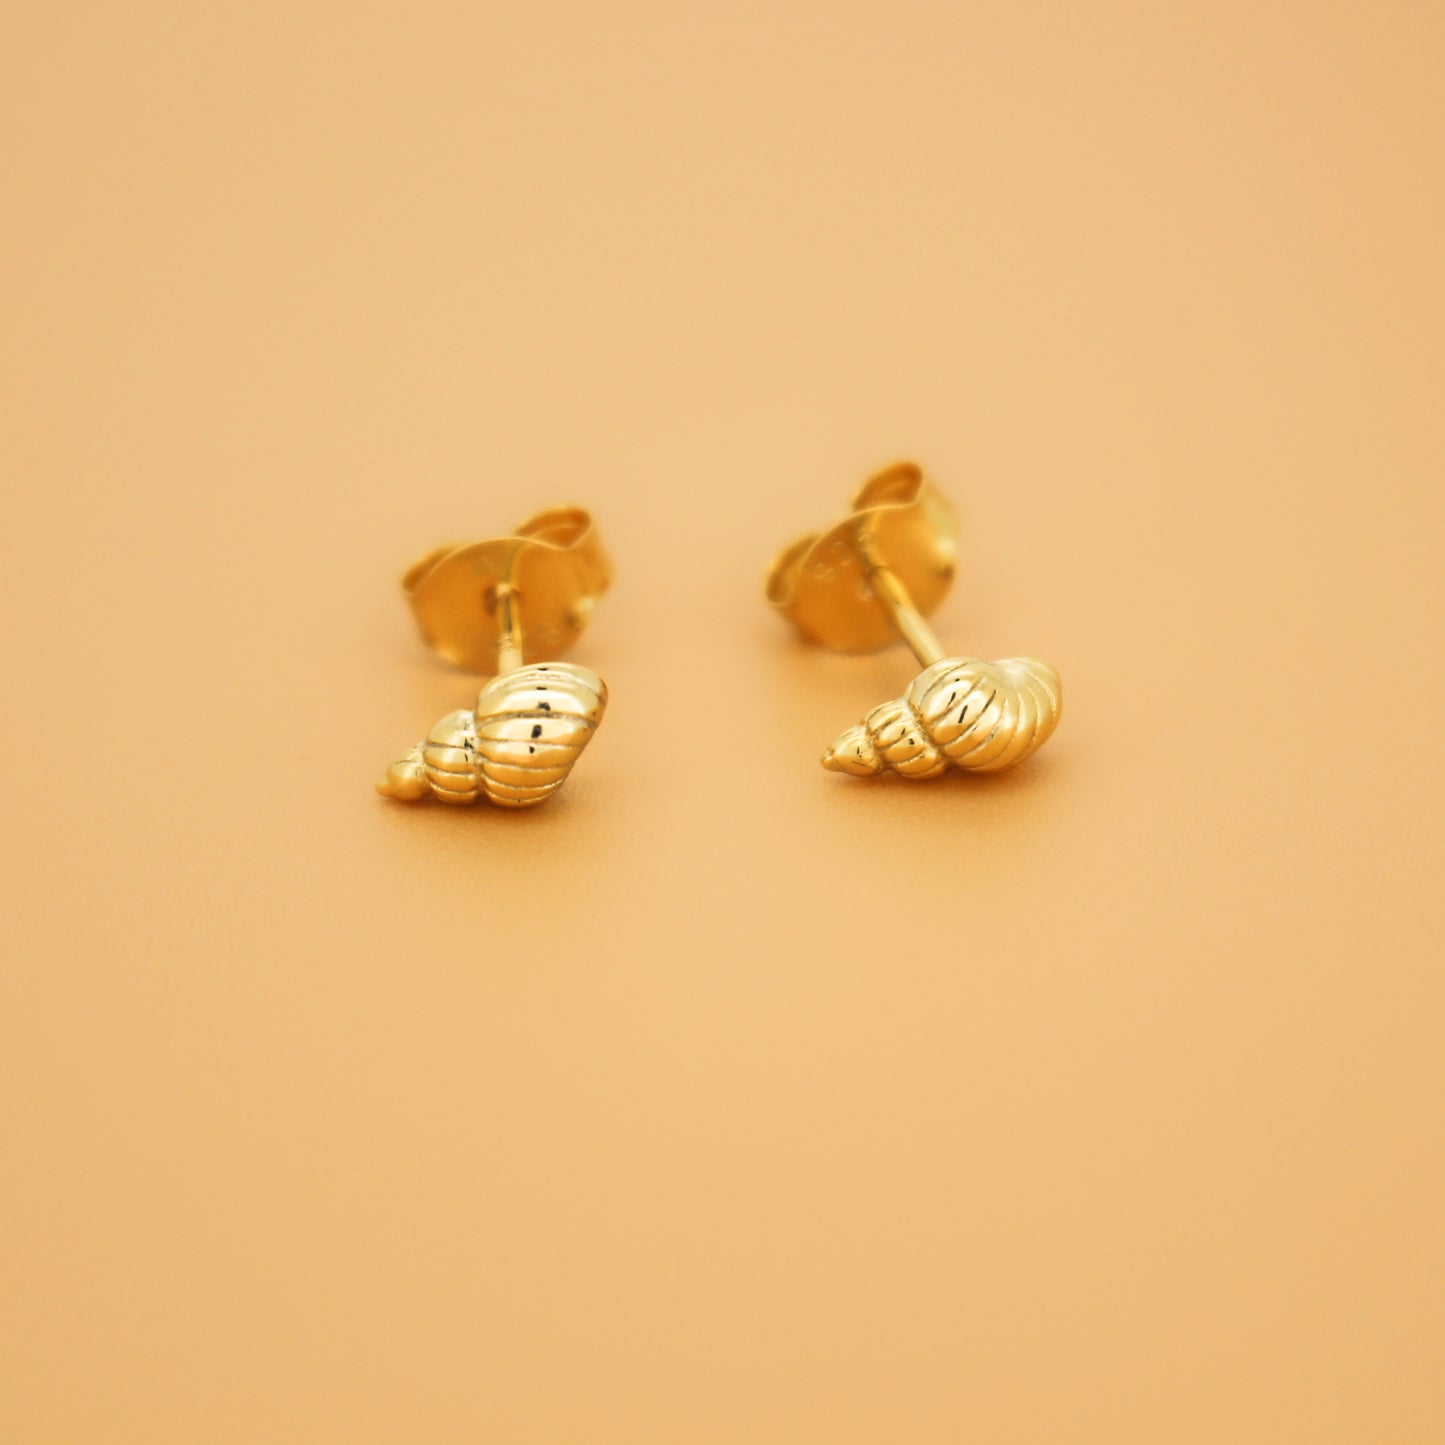 18k Gold Vermeil Minimalist Shell Stud Earrings ∙ Waterproof ∙ Tiny Spiral Shell Earrings ∙ Minimalist Silver Earrings ∙ Ocean Summer Beach